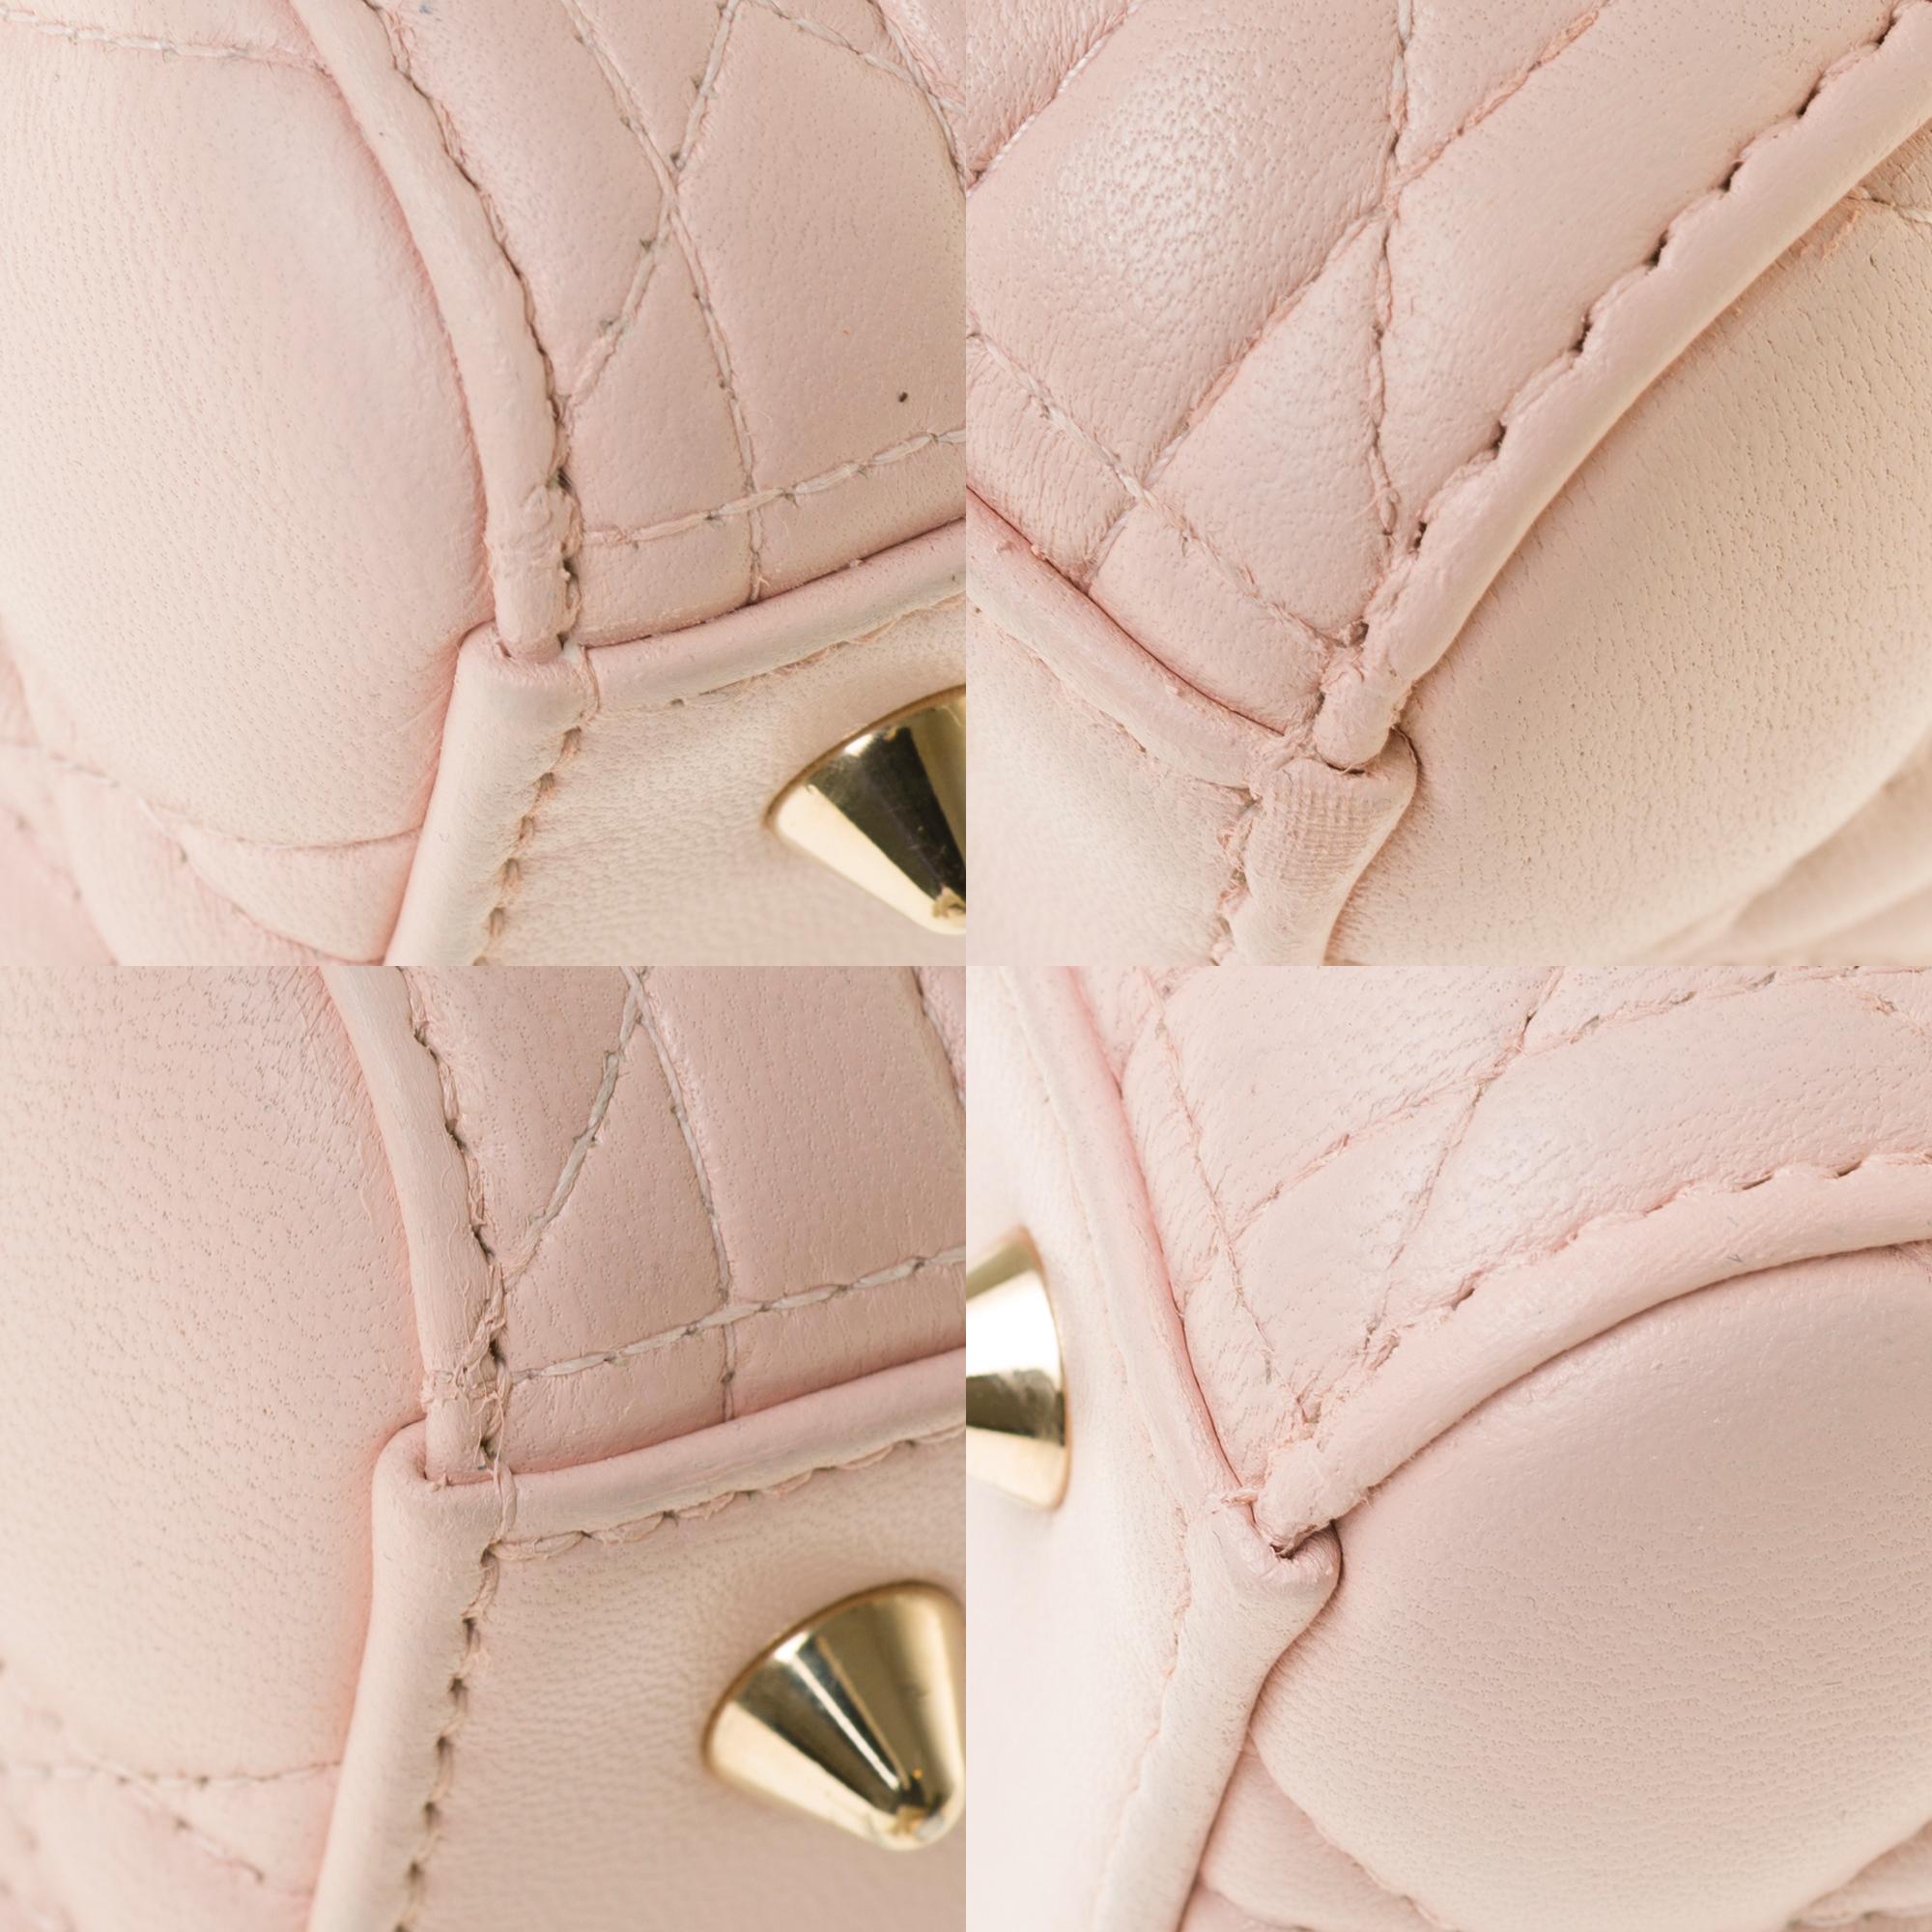  Christian Dior Lady Dior Medium size handbag in Baby Pink cannage leather, CHW 5